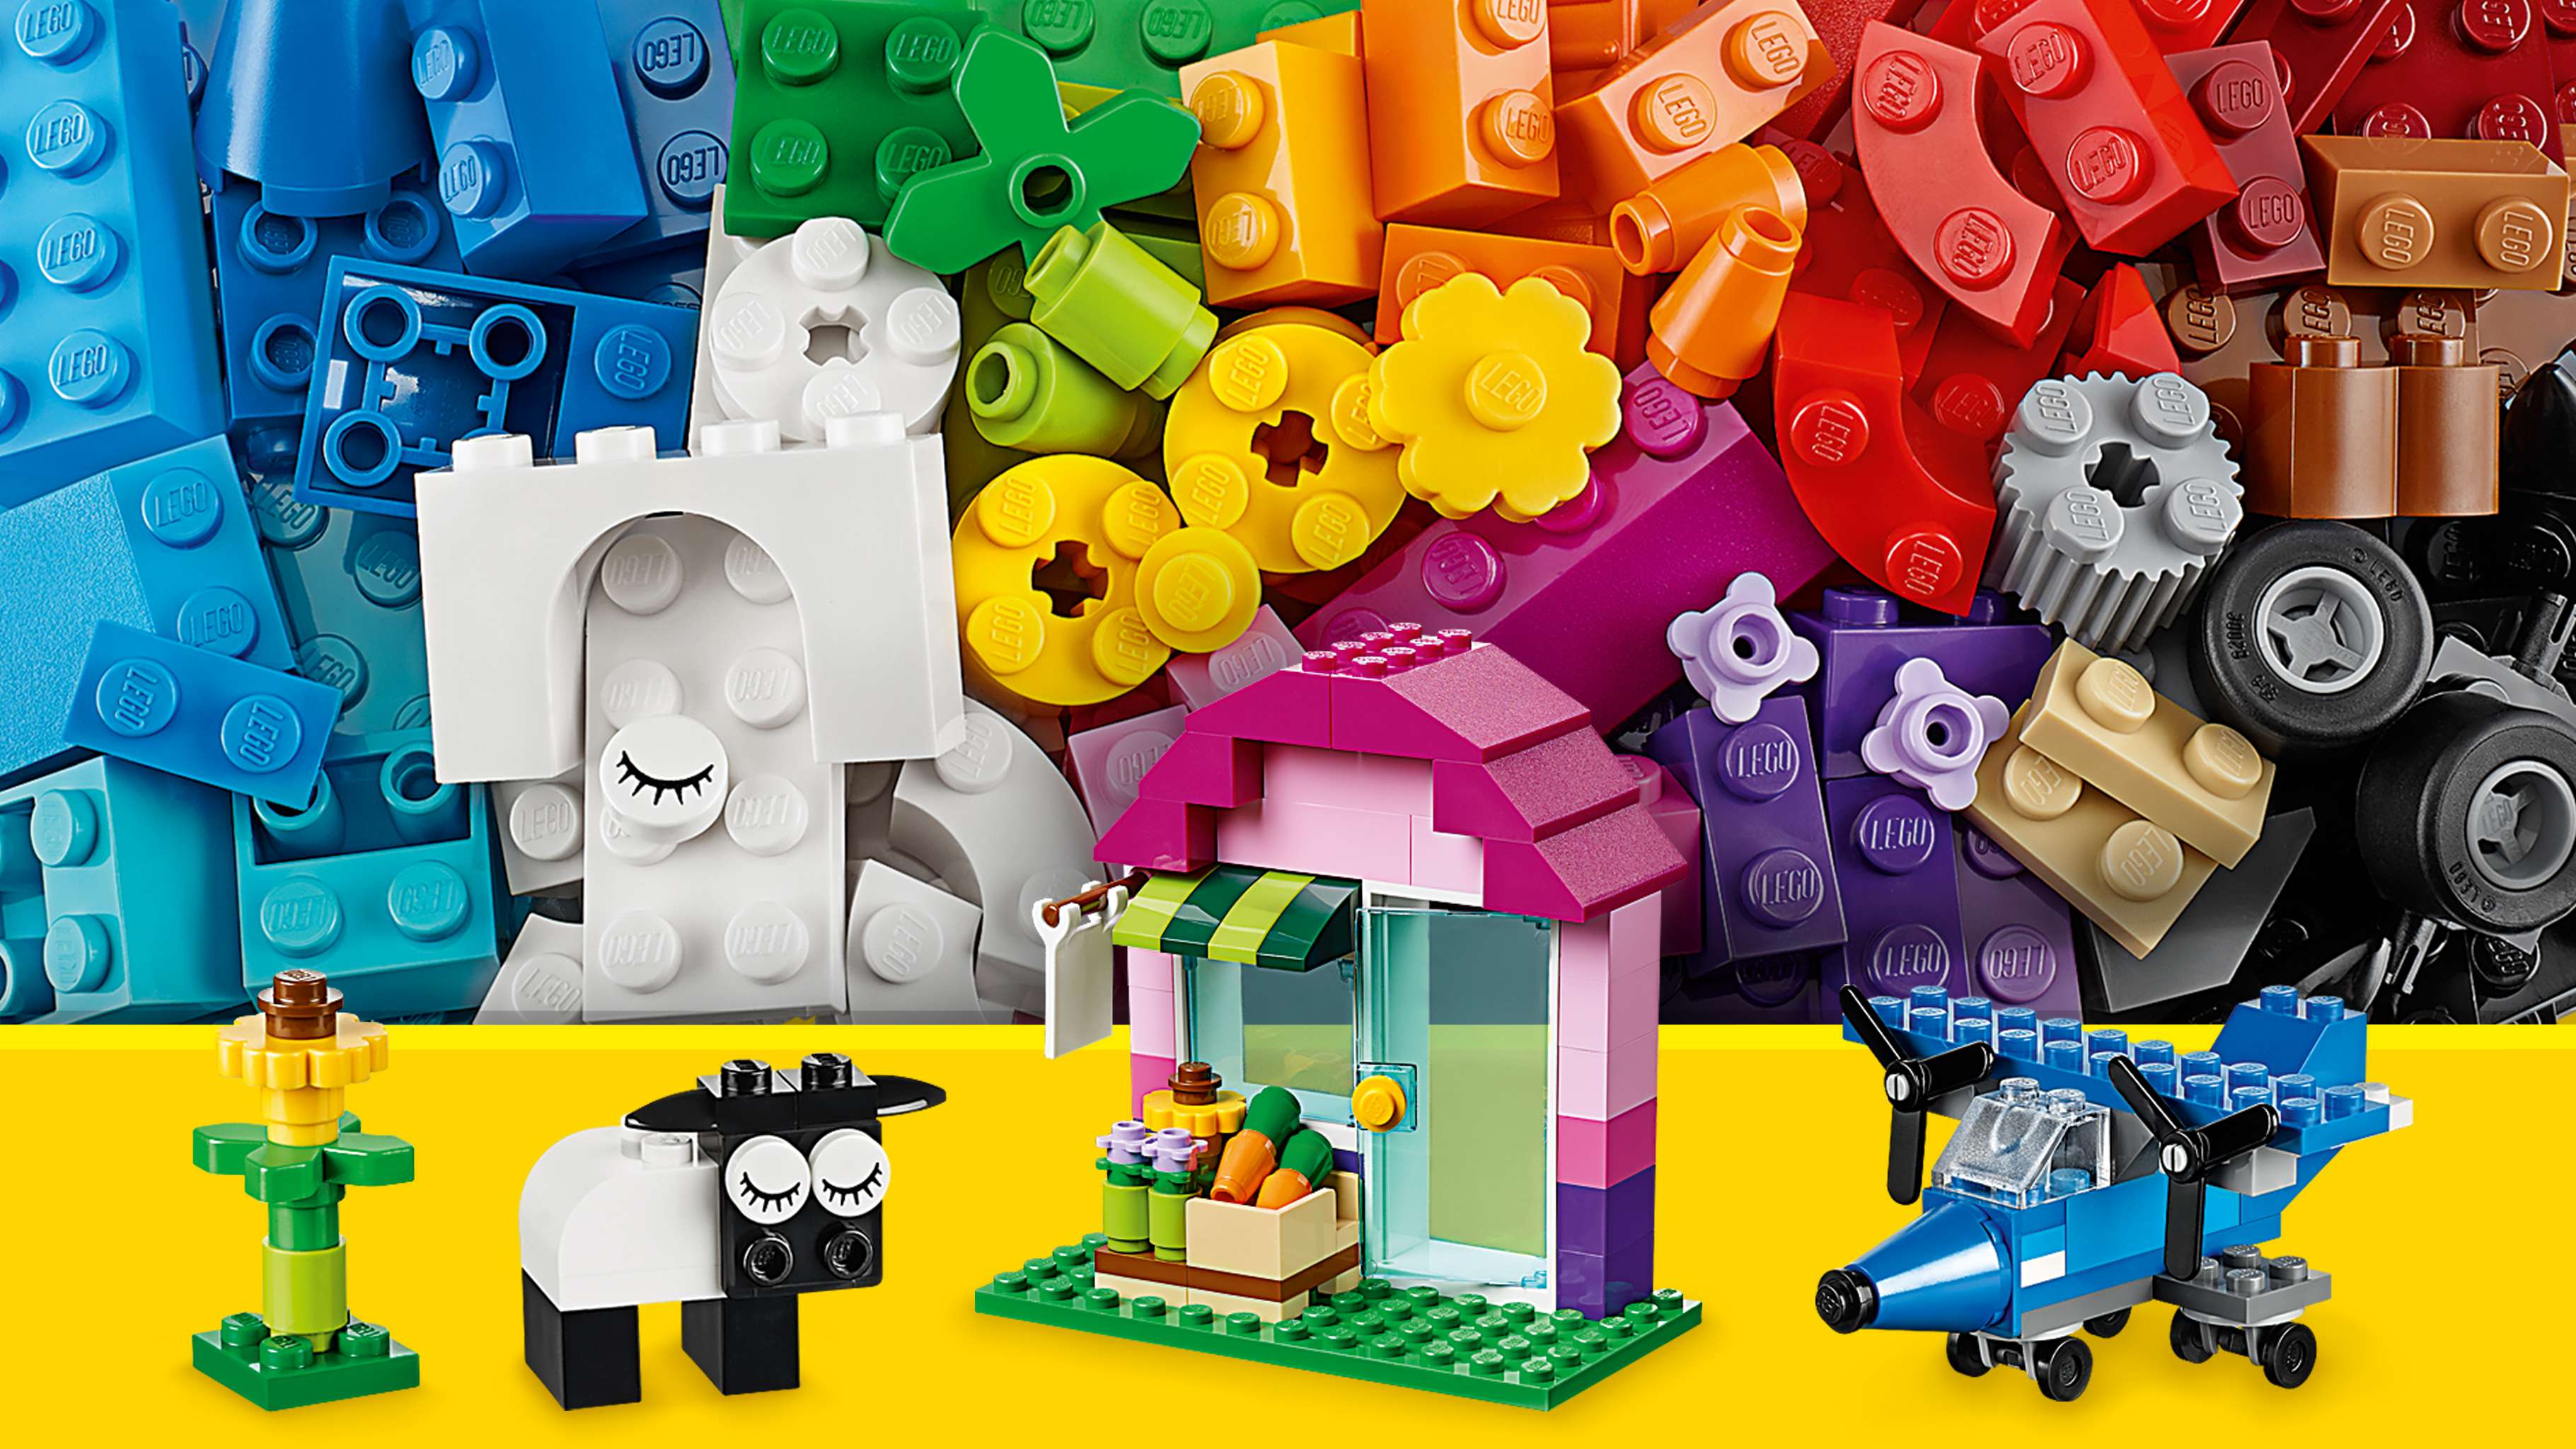 Scatola Della Creatività Blu LEGO Classic 10706 - Giochi e giocattoli